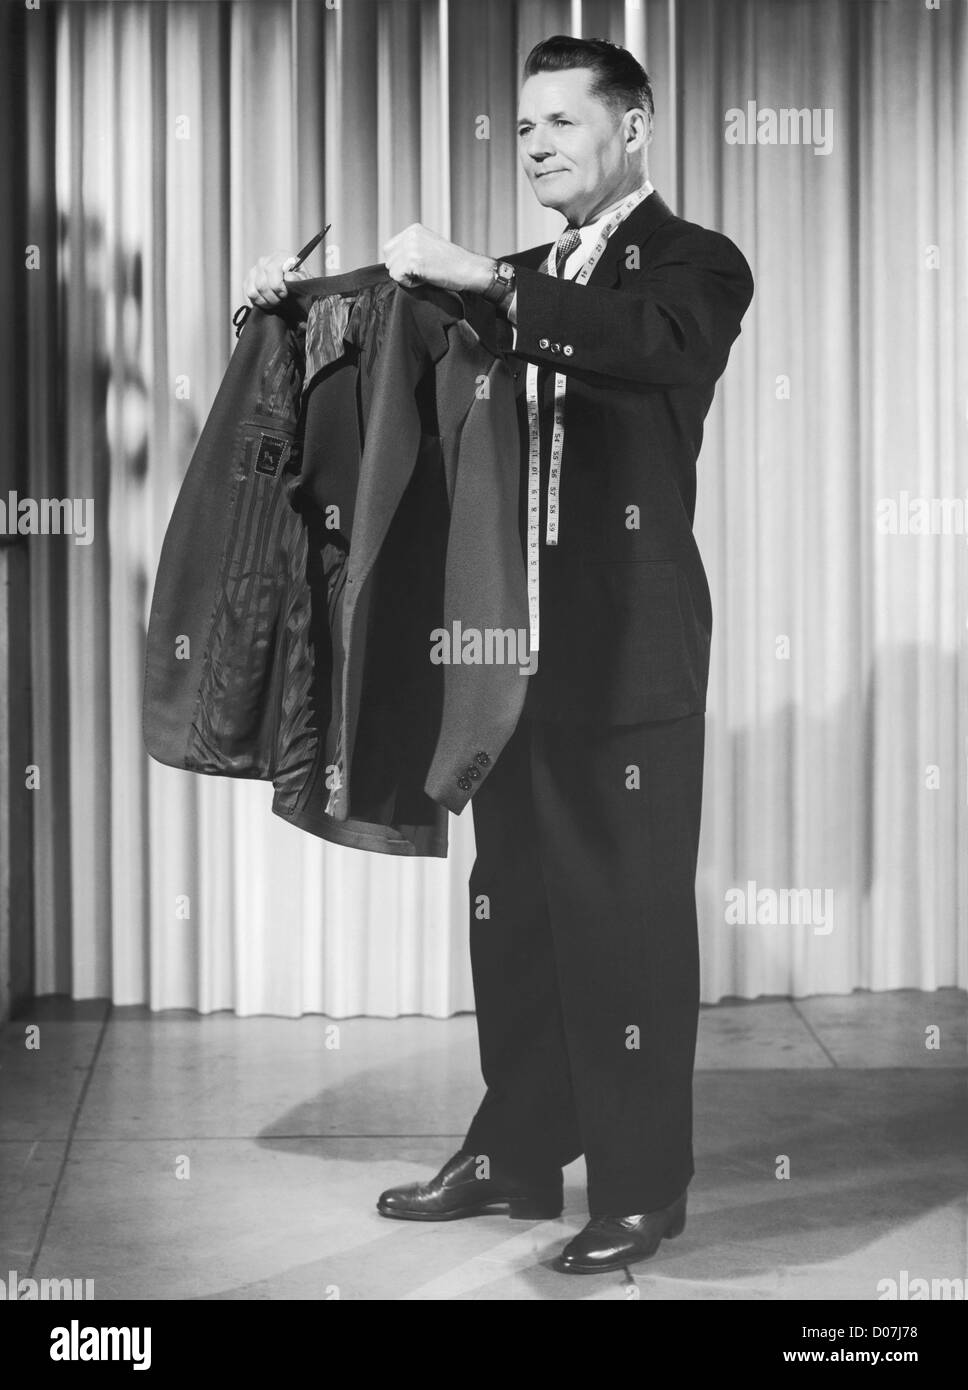 1980s Louis Féraud Black Linen Suit – Sophia's Gallery